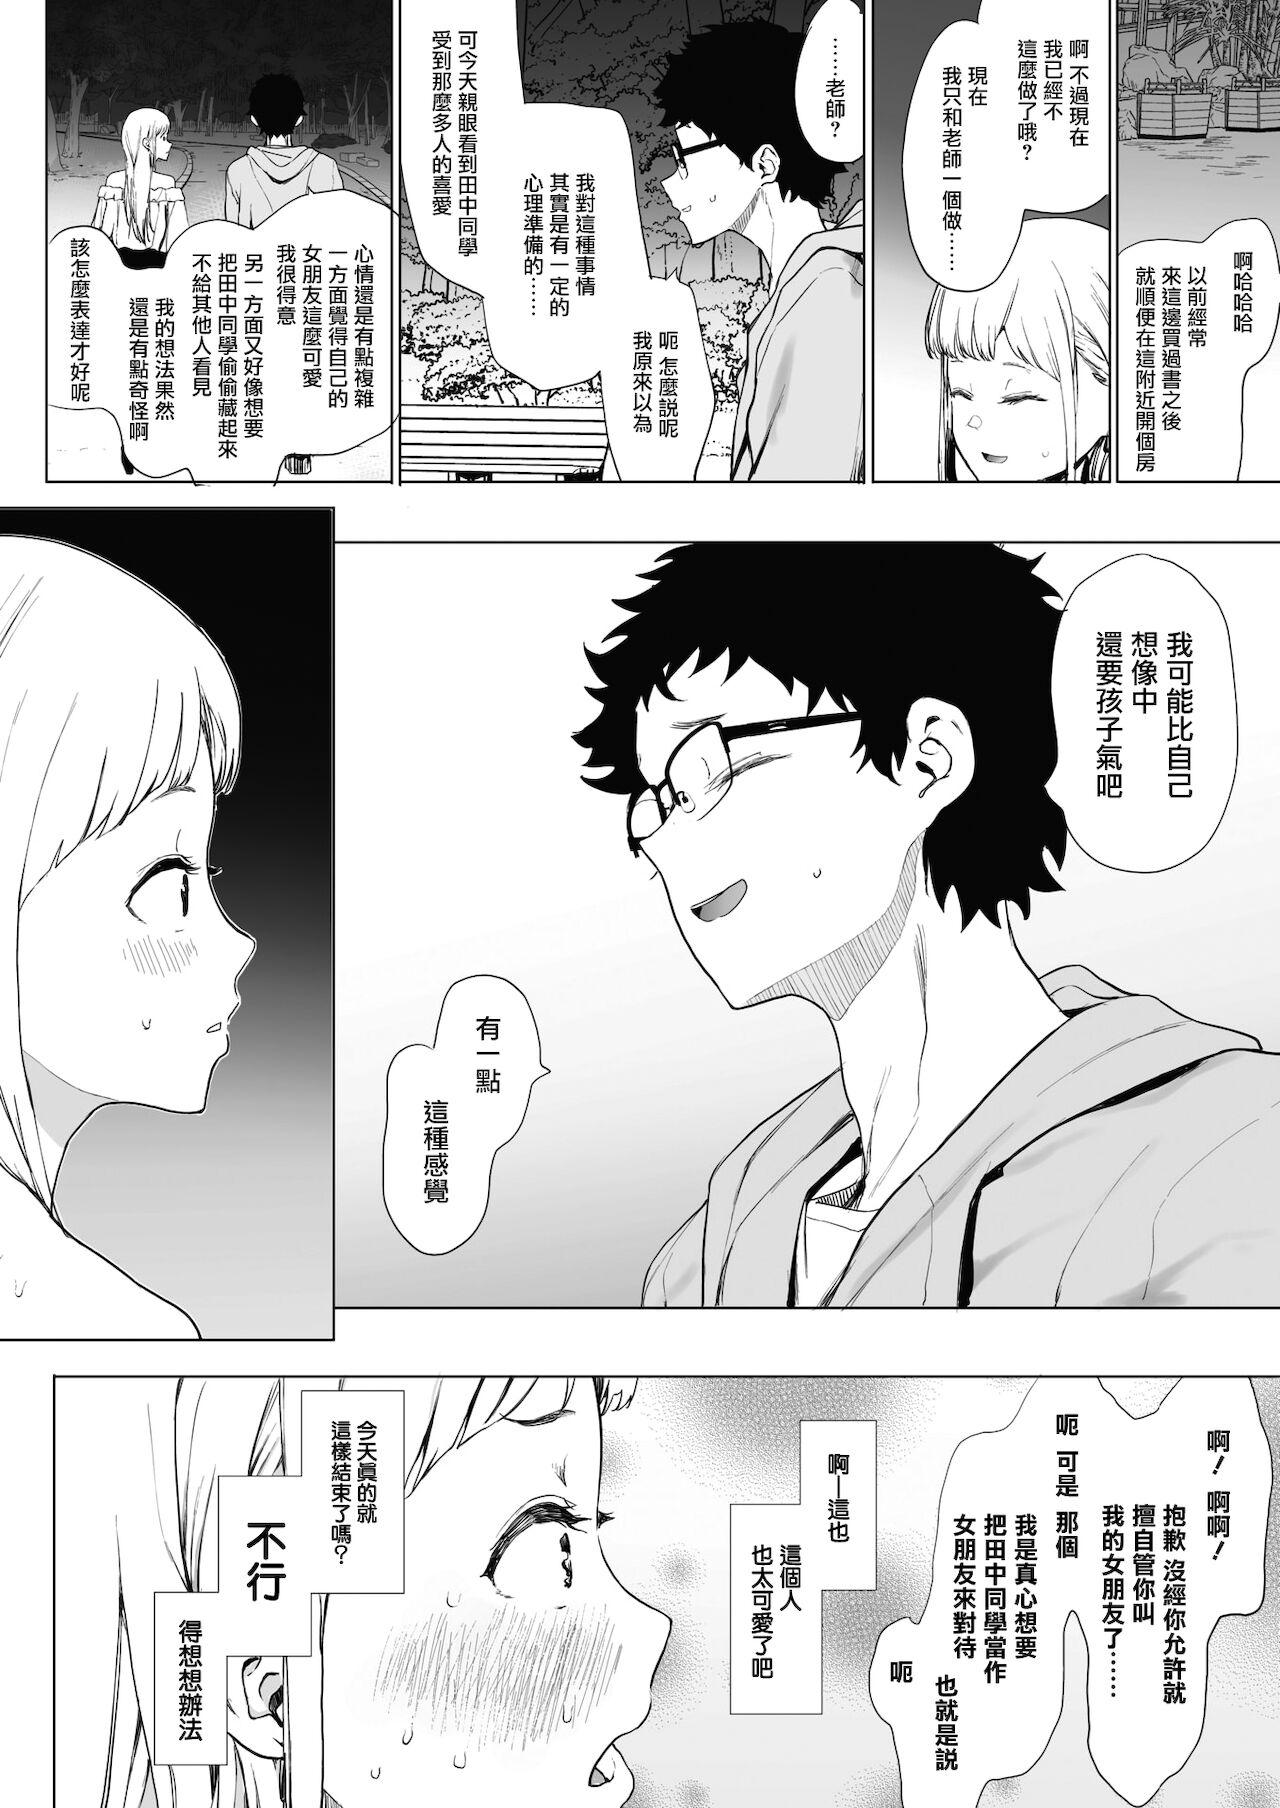 EIGHTMANsensei no okage de Kanojo ga dekimashita! 2 | I Got a Girlfriend with Eightman-sensei's Help! 2 17